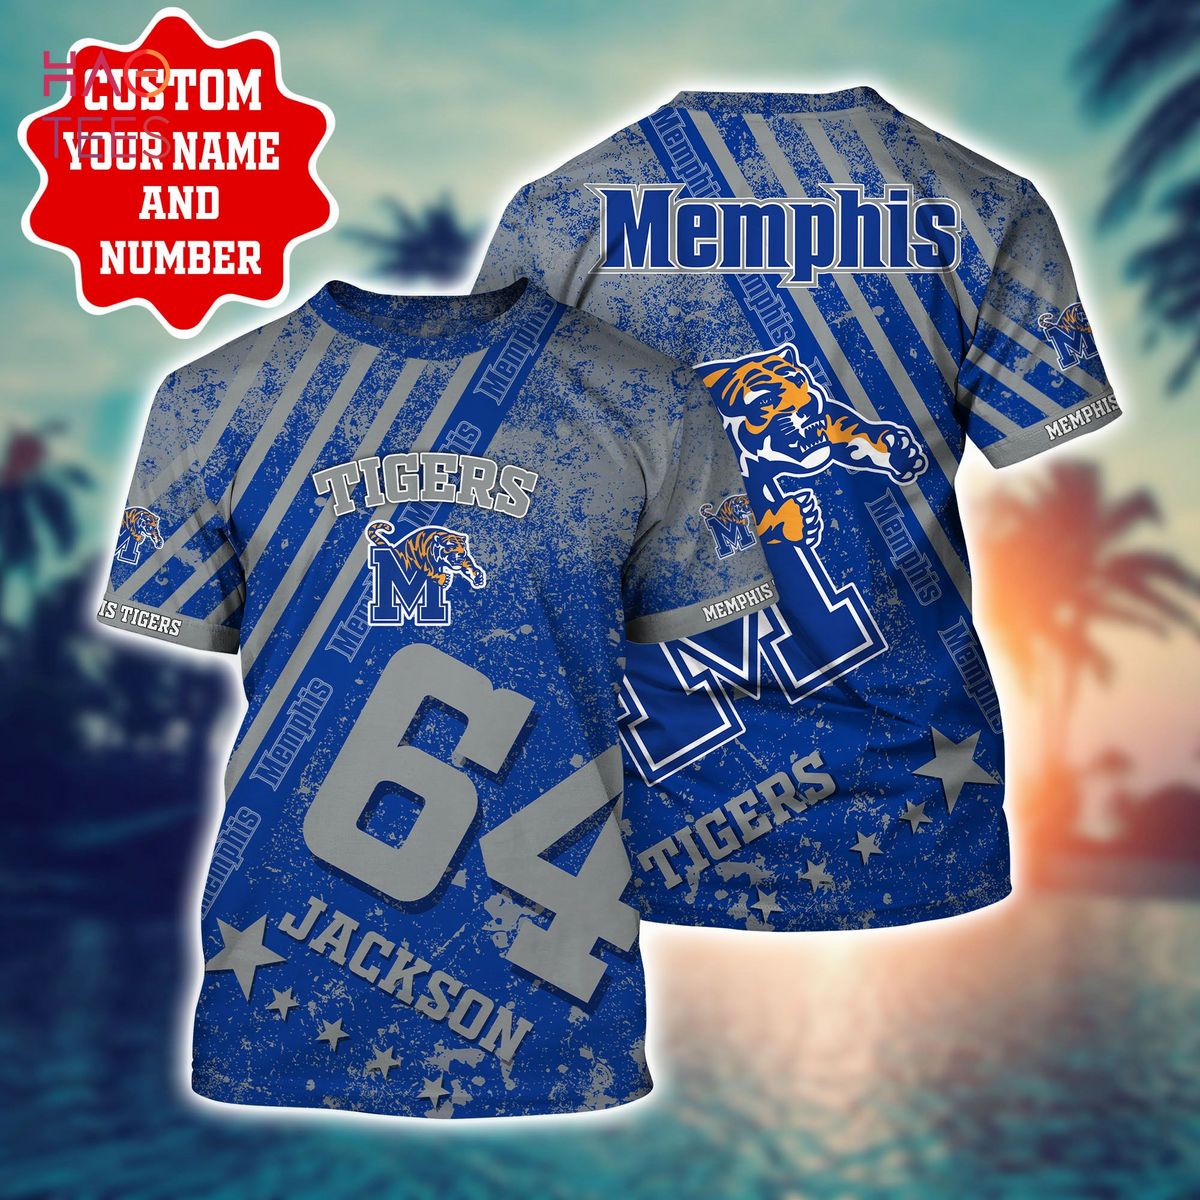 Memphis Tigers NFL Baseball Jersey Shirt For Fans